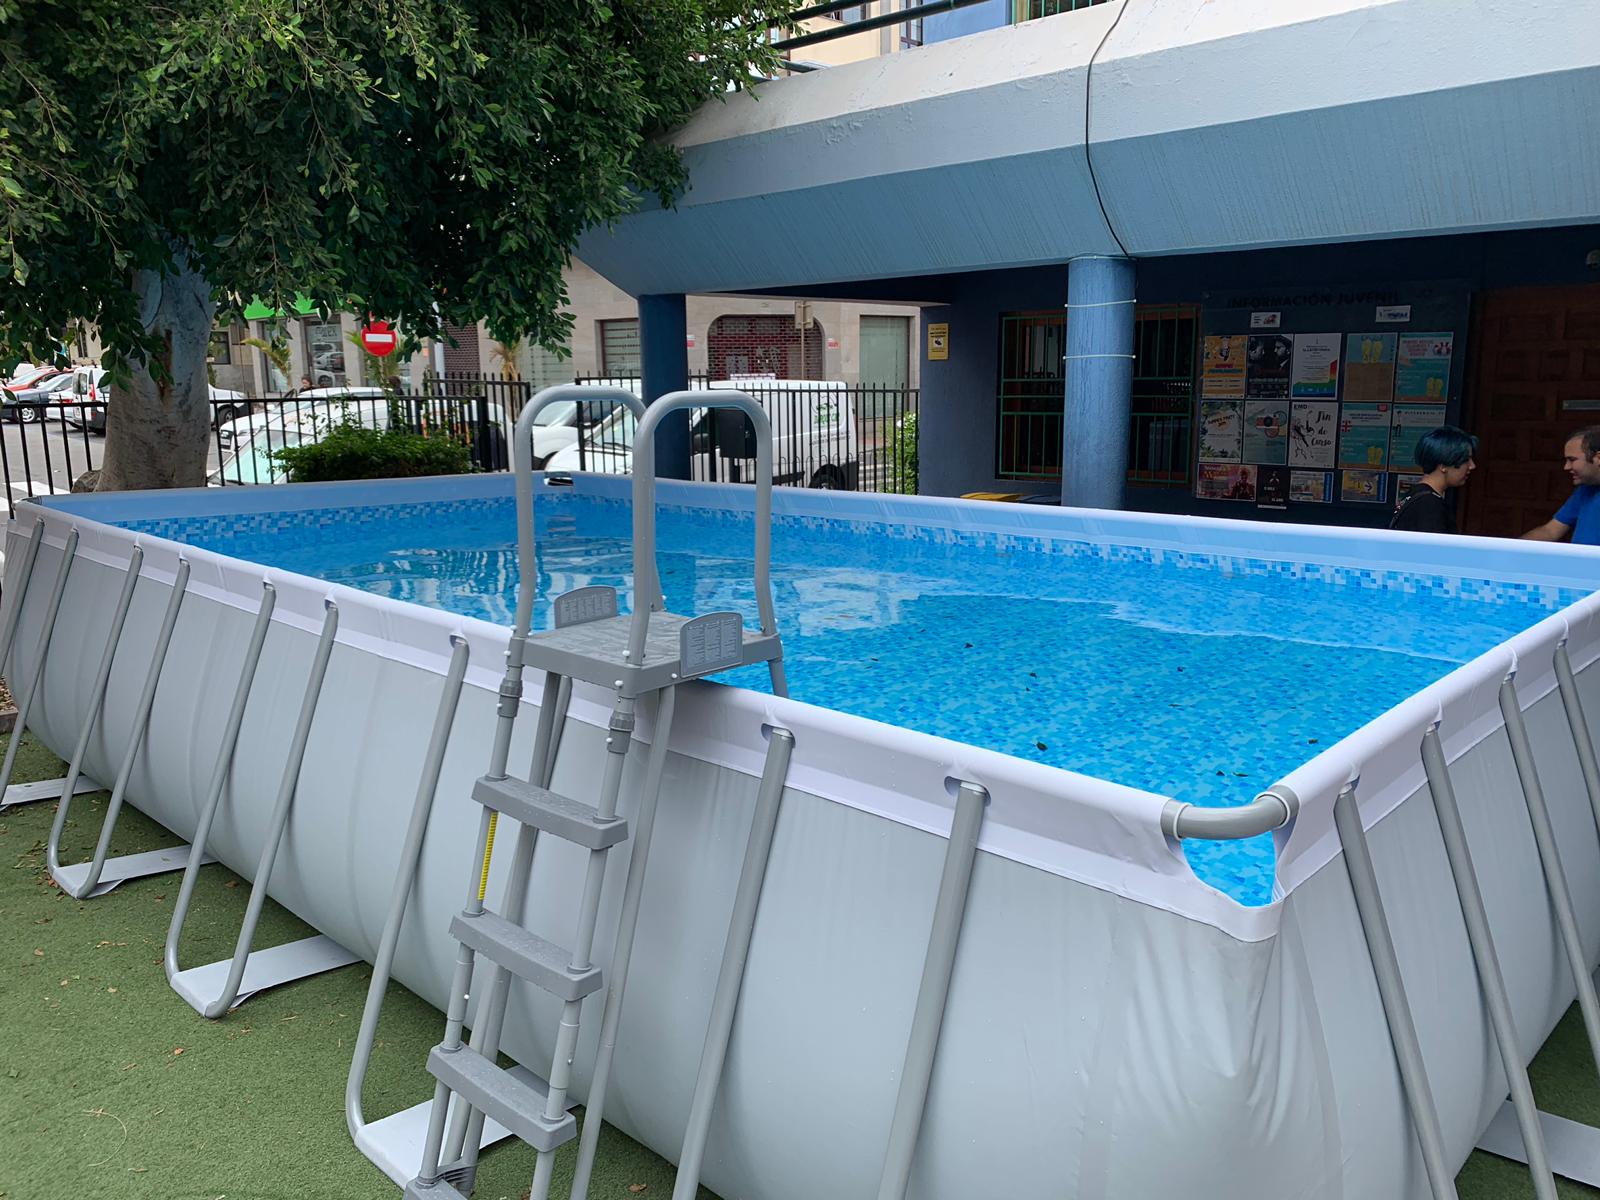 El Punto J. de Santa Lucía  refresca el verano con la piscina y oferta diez cursos en la Escuela de Calor  